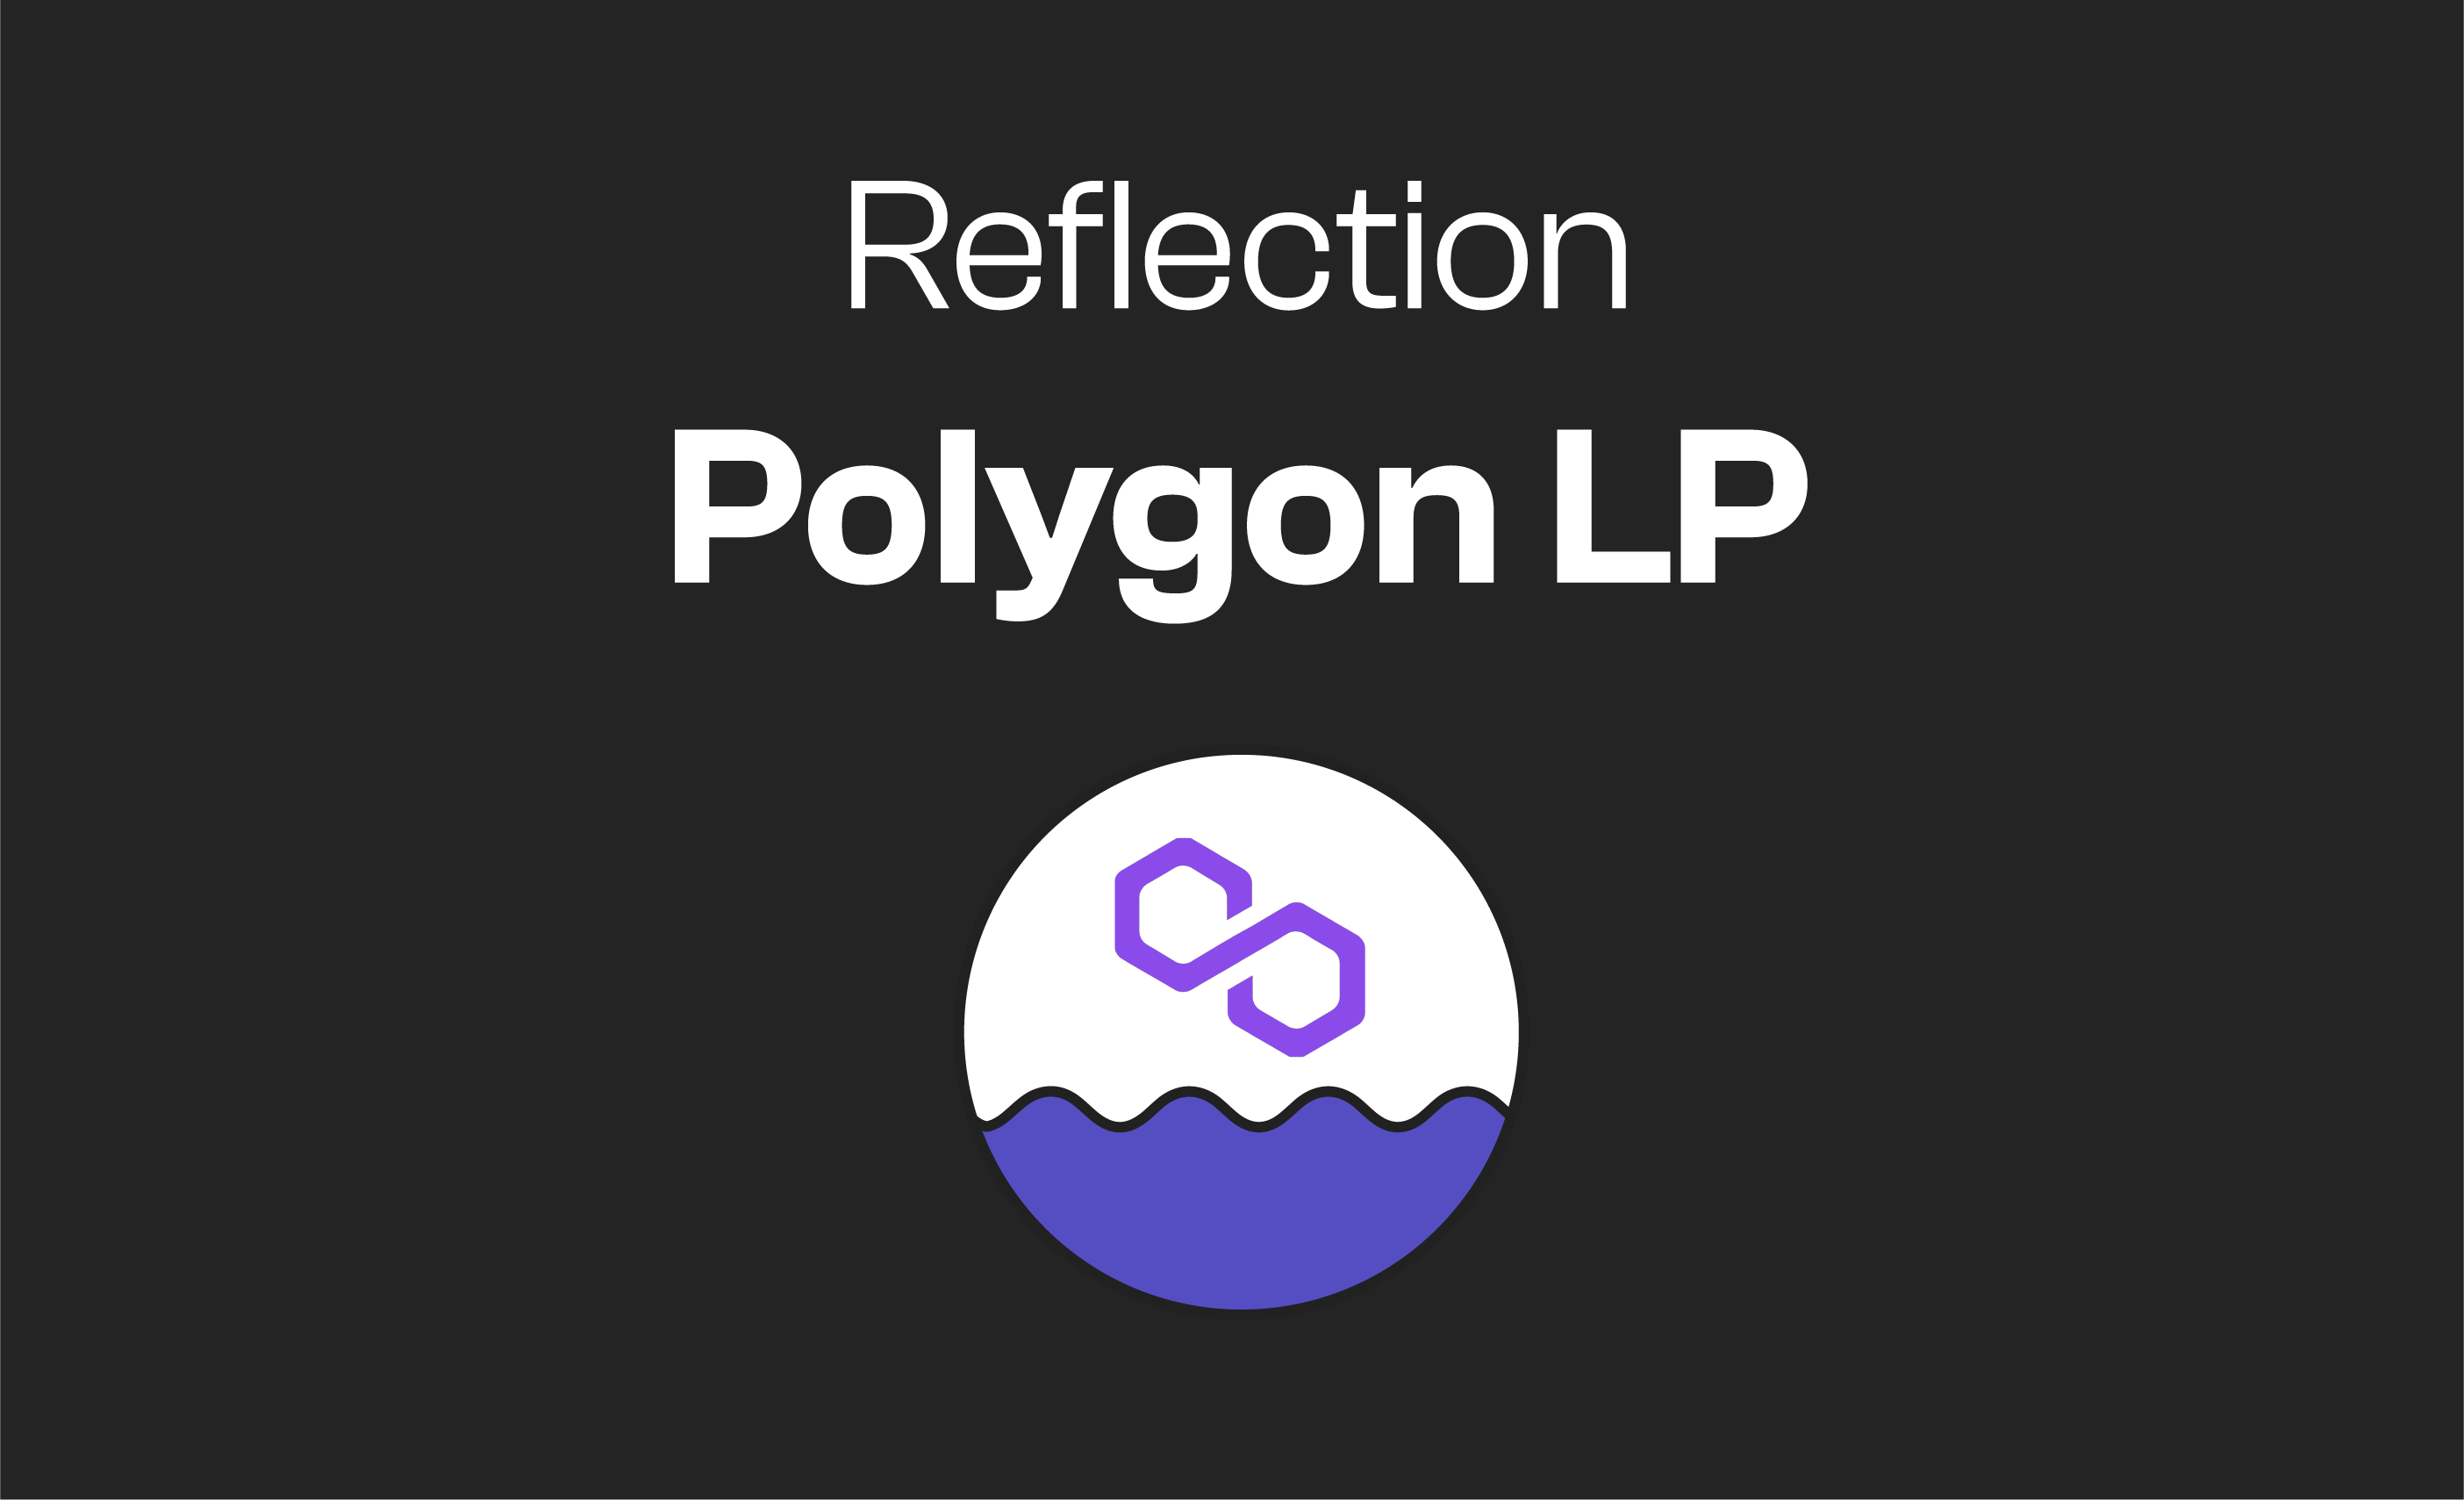 Polygon LP Reflection